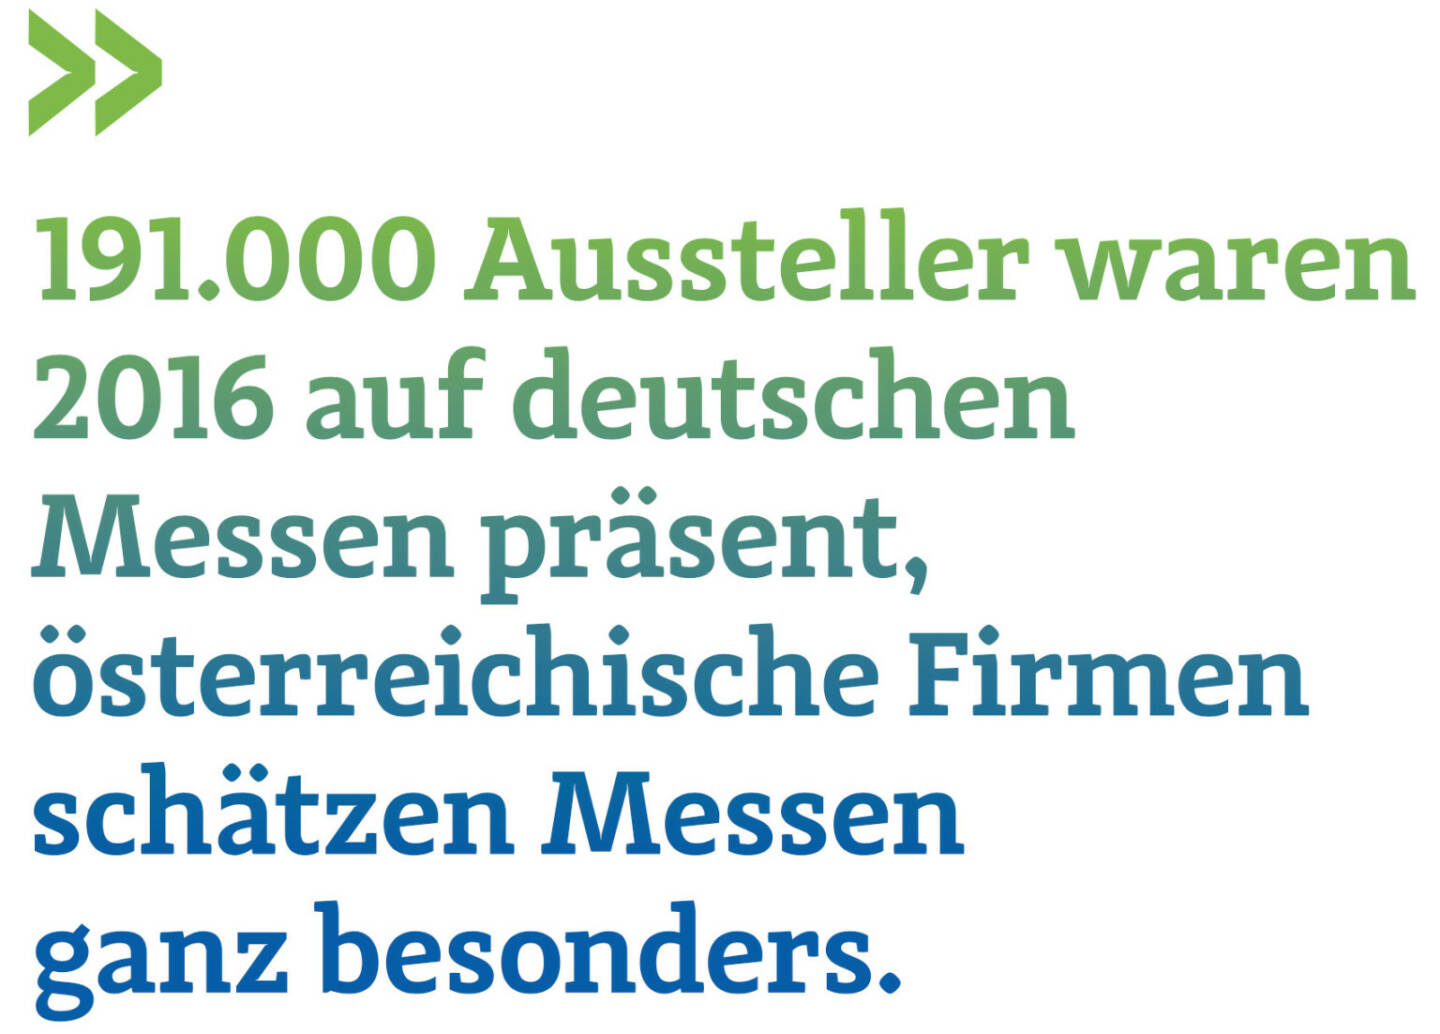 191.000 Aussteller waren 2016 auf deutschen Messen präsent, österreichische Firmen schätzen Messen ganz besonders. (Thomas Gindele, Hauptgeschäftsführer der Deutschen Handelskammer in Österreich)